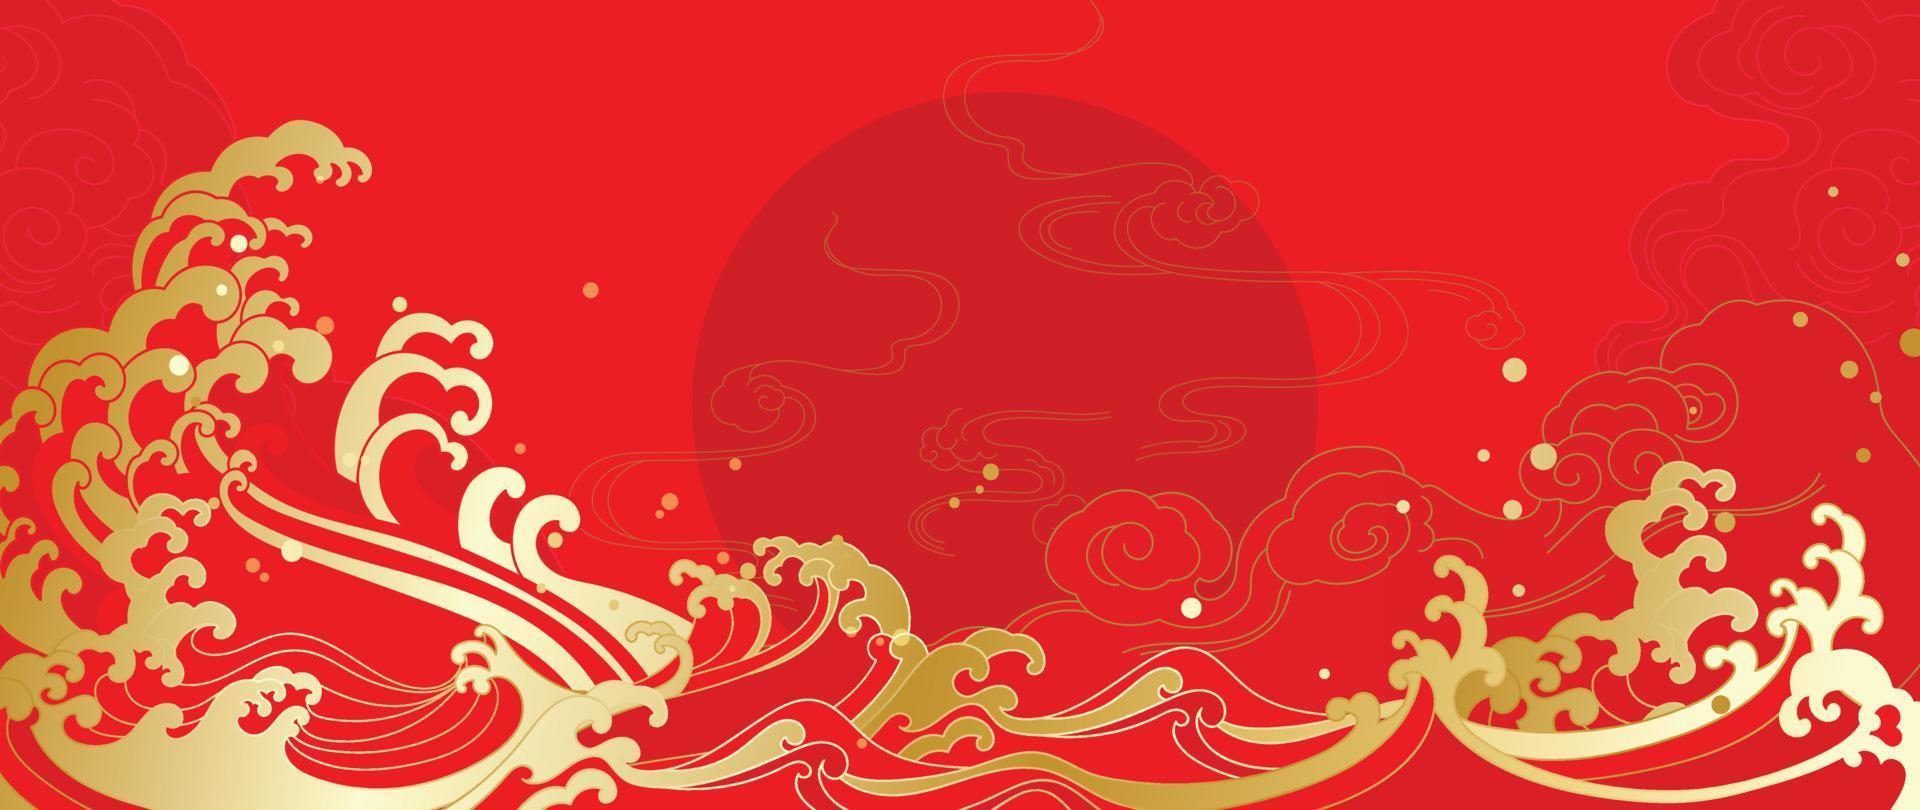 vector de fondo de patrón de estilo de lujo japonés y chino oriental. arte de línea de estilo de onda oriental de oro decorativo con fondo rojo de patrón chino. ilustración de diseño para papel tapiz, tarjeta, afiche.